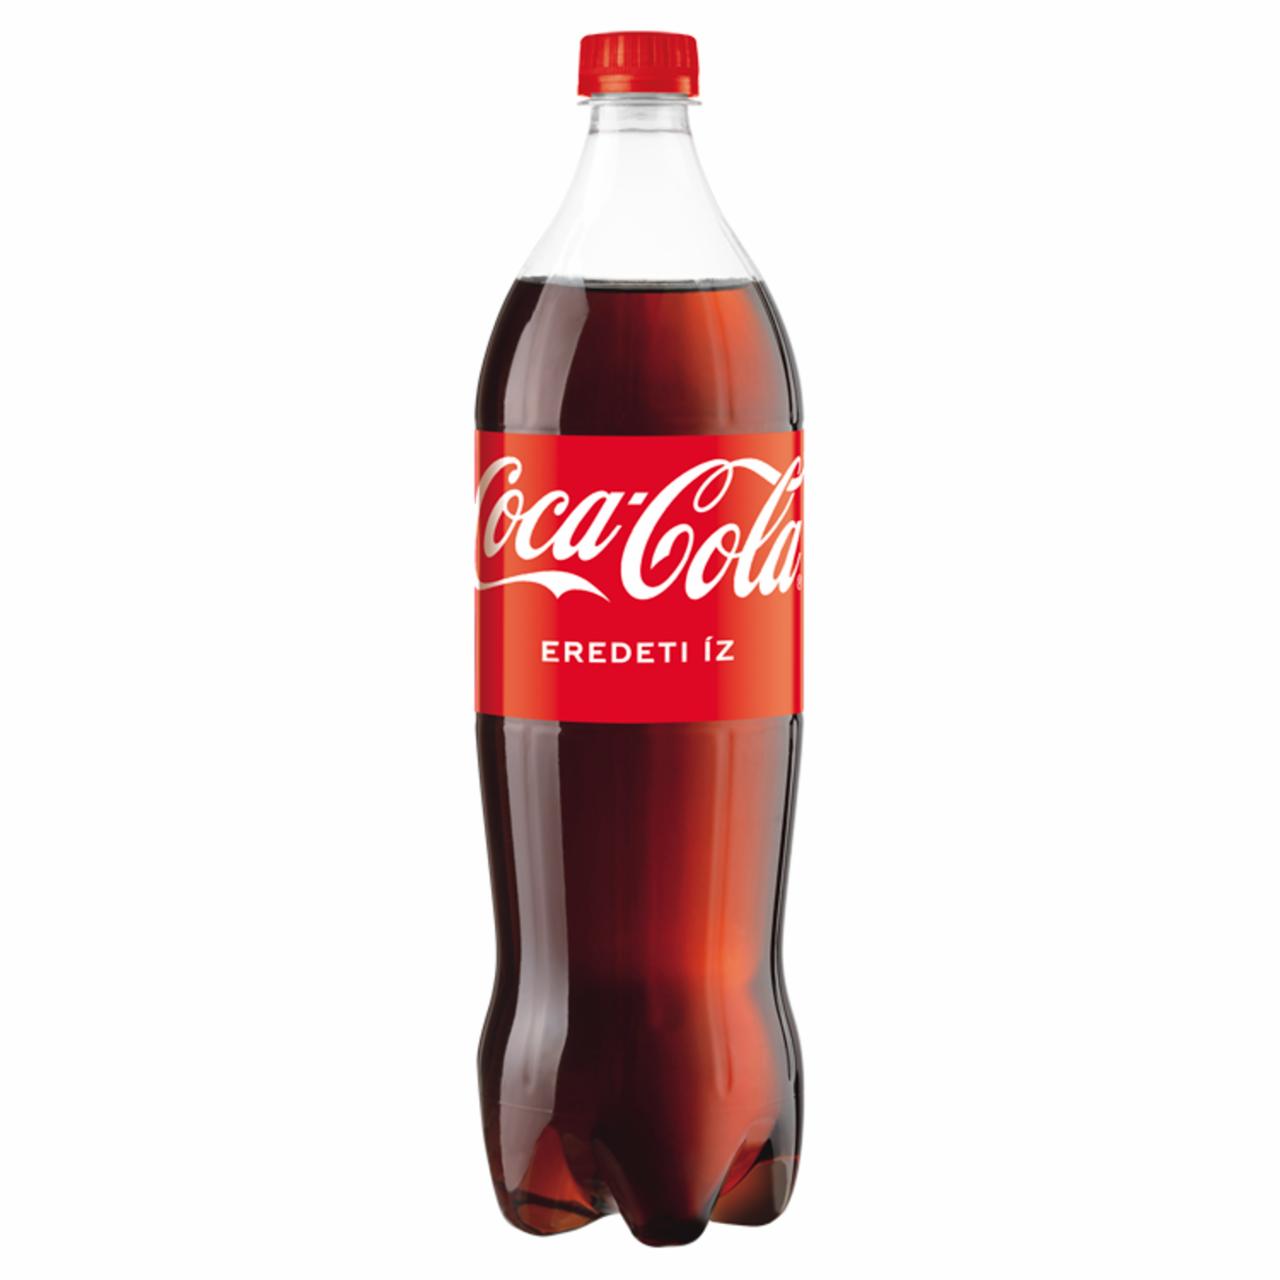 Képek - Coca-Cola colaízű szénsavas üdítőital 1,25 l